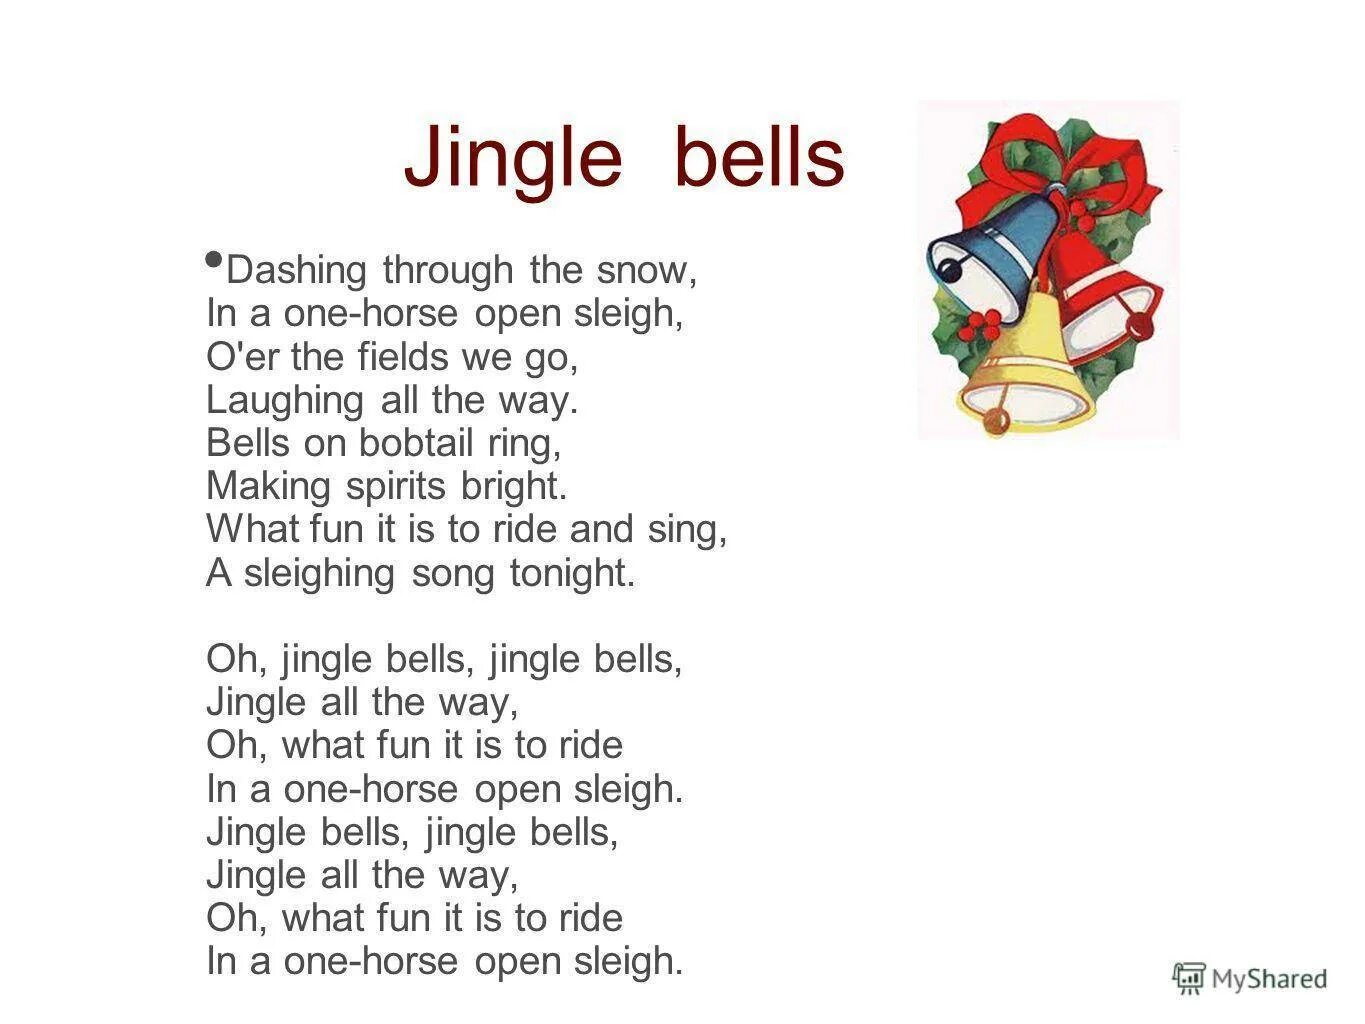 Джингл белс. Текст песни Jingle Bells. Jingle Bells перевод. Джингл белс песня. Джингл белс контакты